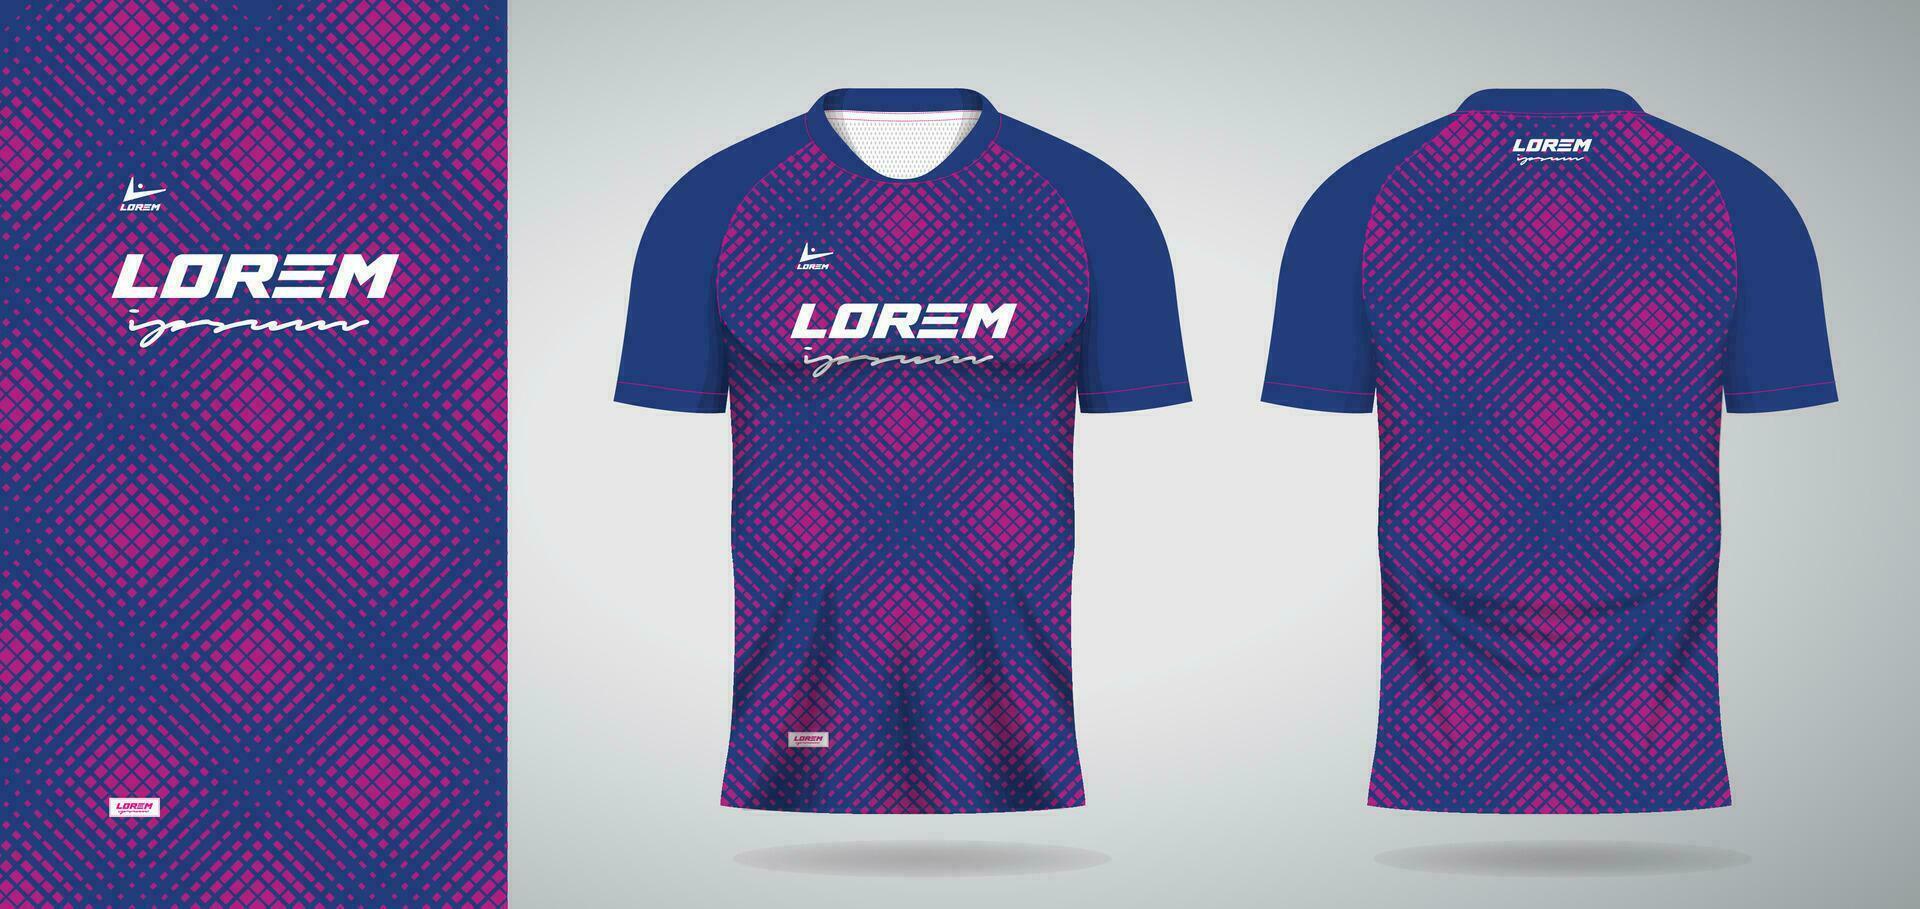 azul Rosa Esportes jérsei modelo para futebol uniforme camisa Projeto vetor